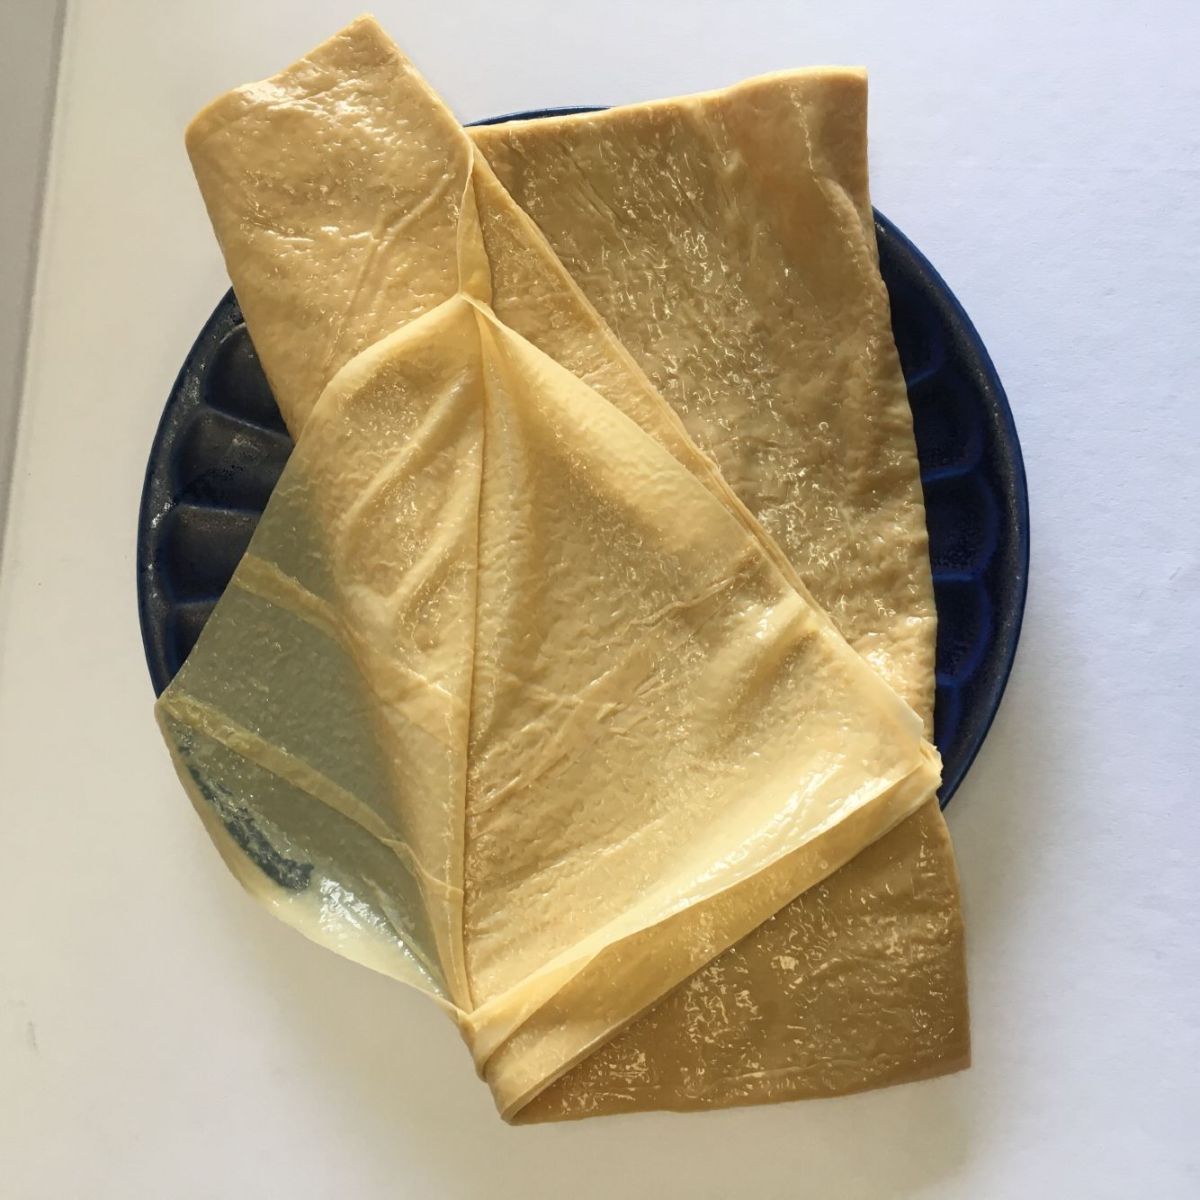  незначительный тофу кожа рефрижератор сырой .. сиденье 20 листов входит [5 позиций комплект ] 20cm угол китайский пищевые ингредиенты замороженные продукты бесплатная доставка ( Hokkaido, Okinawa за исключением )